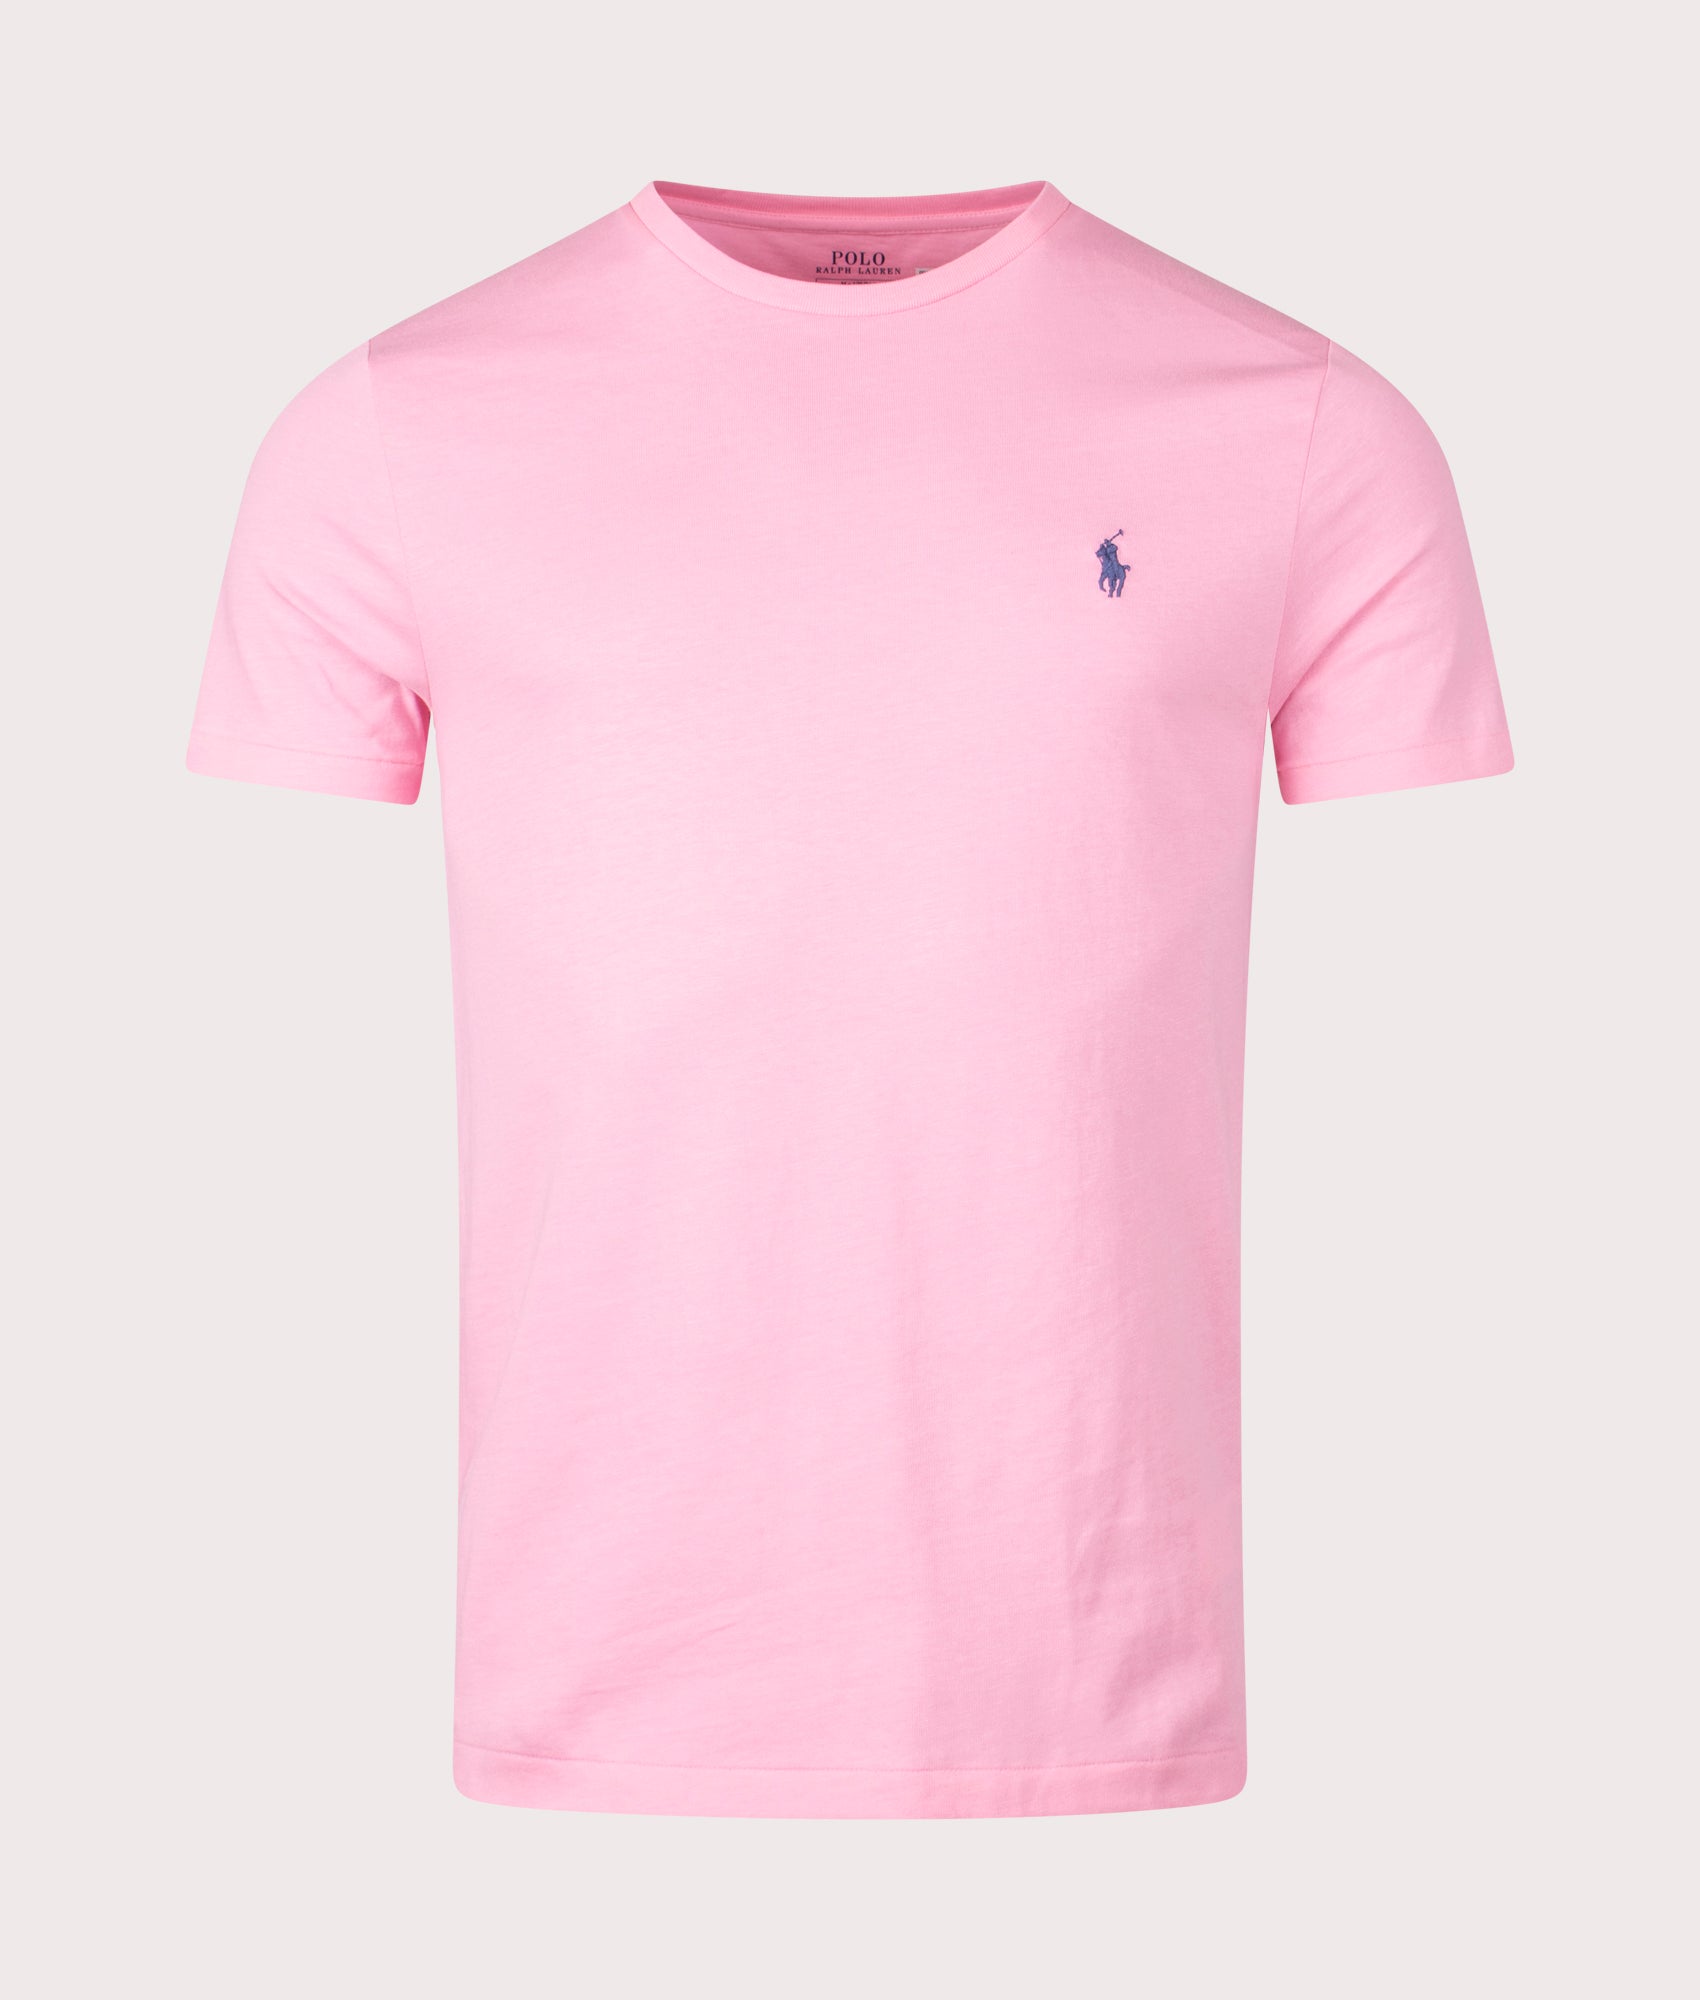 Polo Ralph Lauren Mens Custom Slim Fit T-Shirt - Colour: 346 Course Pink - Size: XL